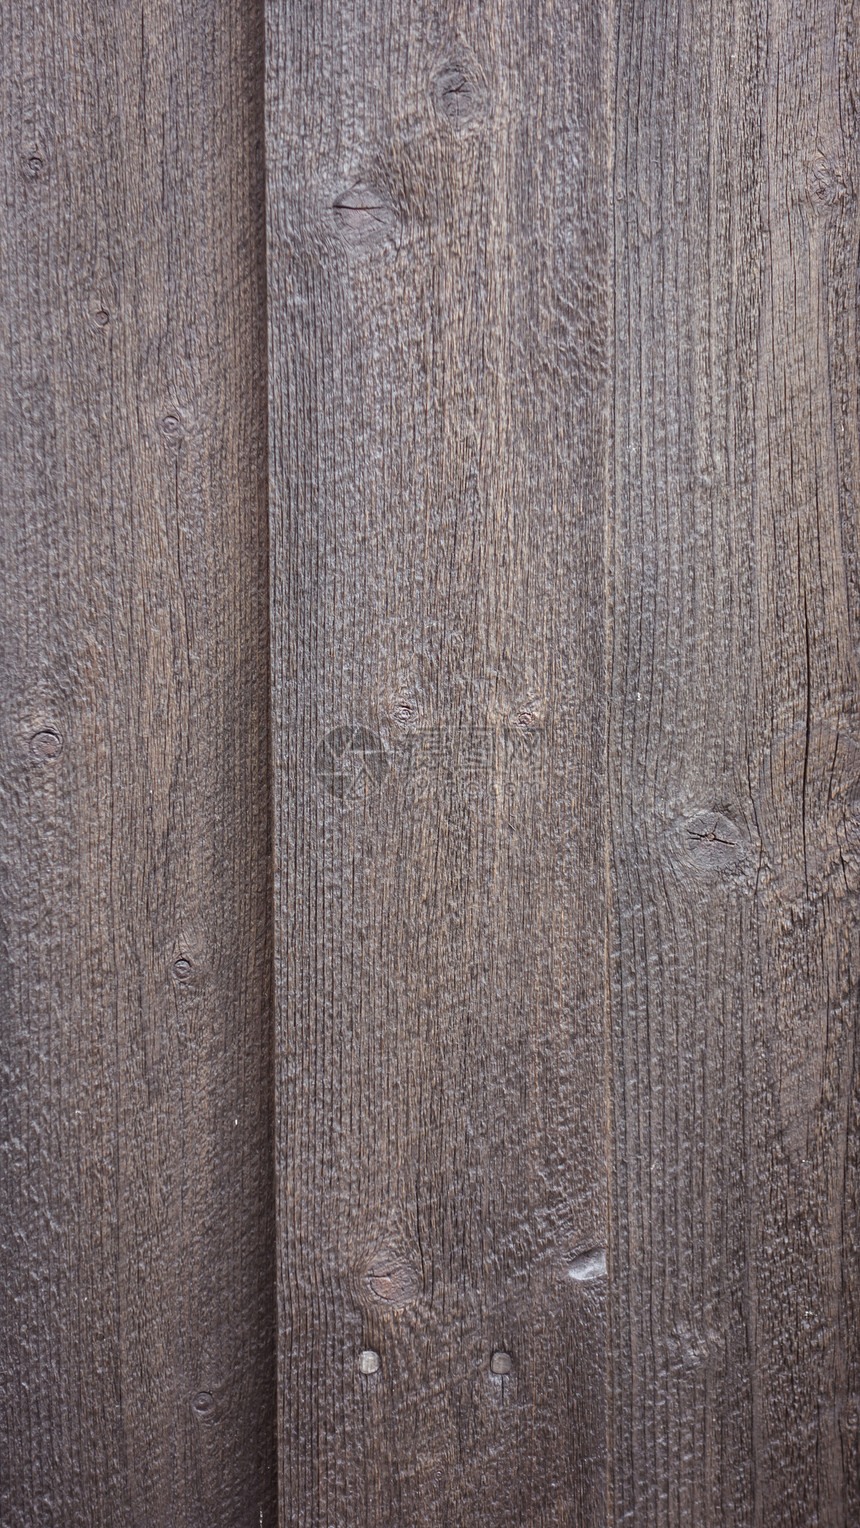 旧木日背景地板墙纸木材木板松树控制板建筑学样本宏观木地板图片